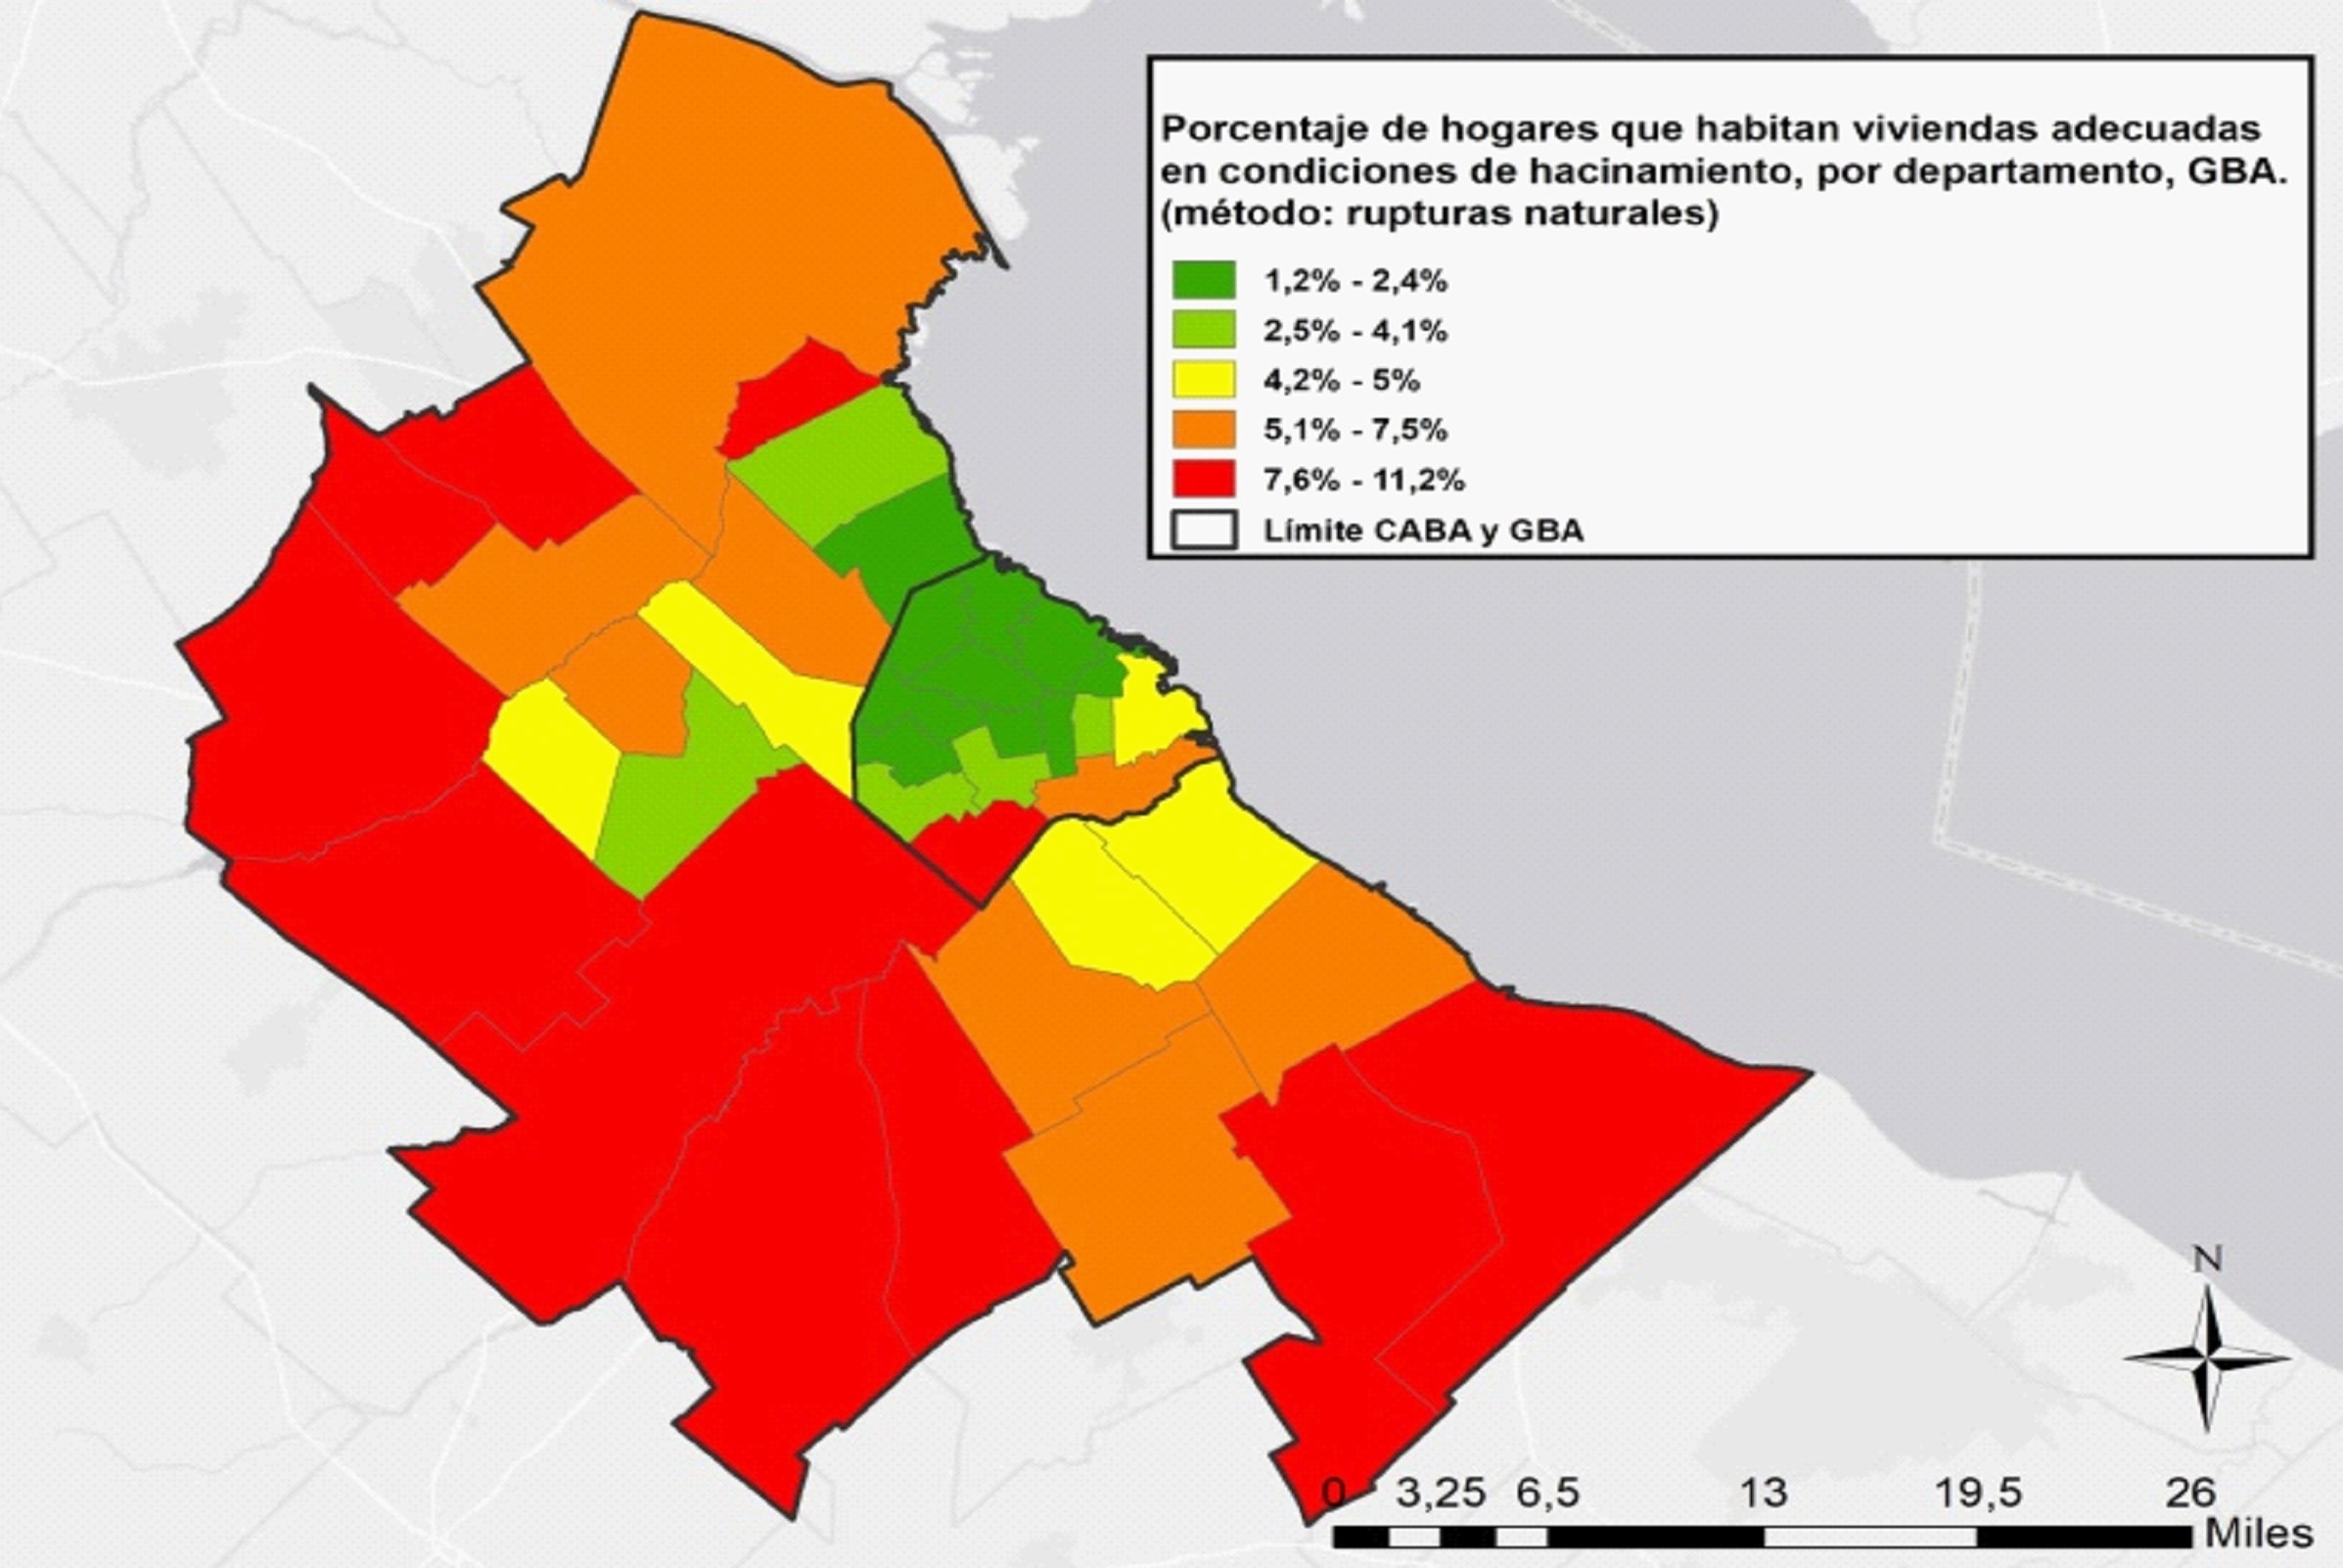 Porcentaje de hogares que habitan viviendas adecuadas en condiciones de hacinamiento, por departamento, GBA, 2010